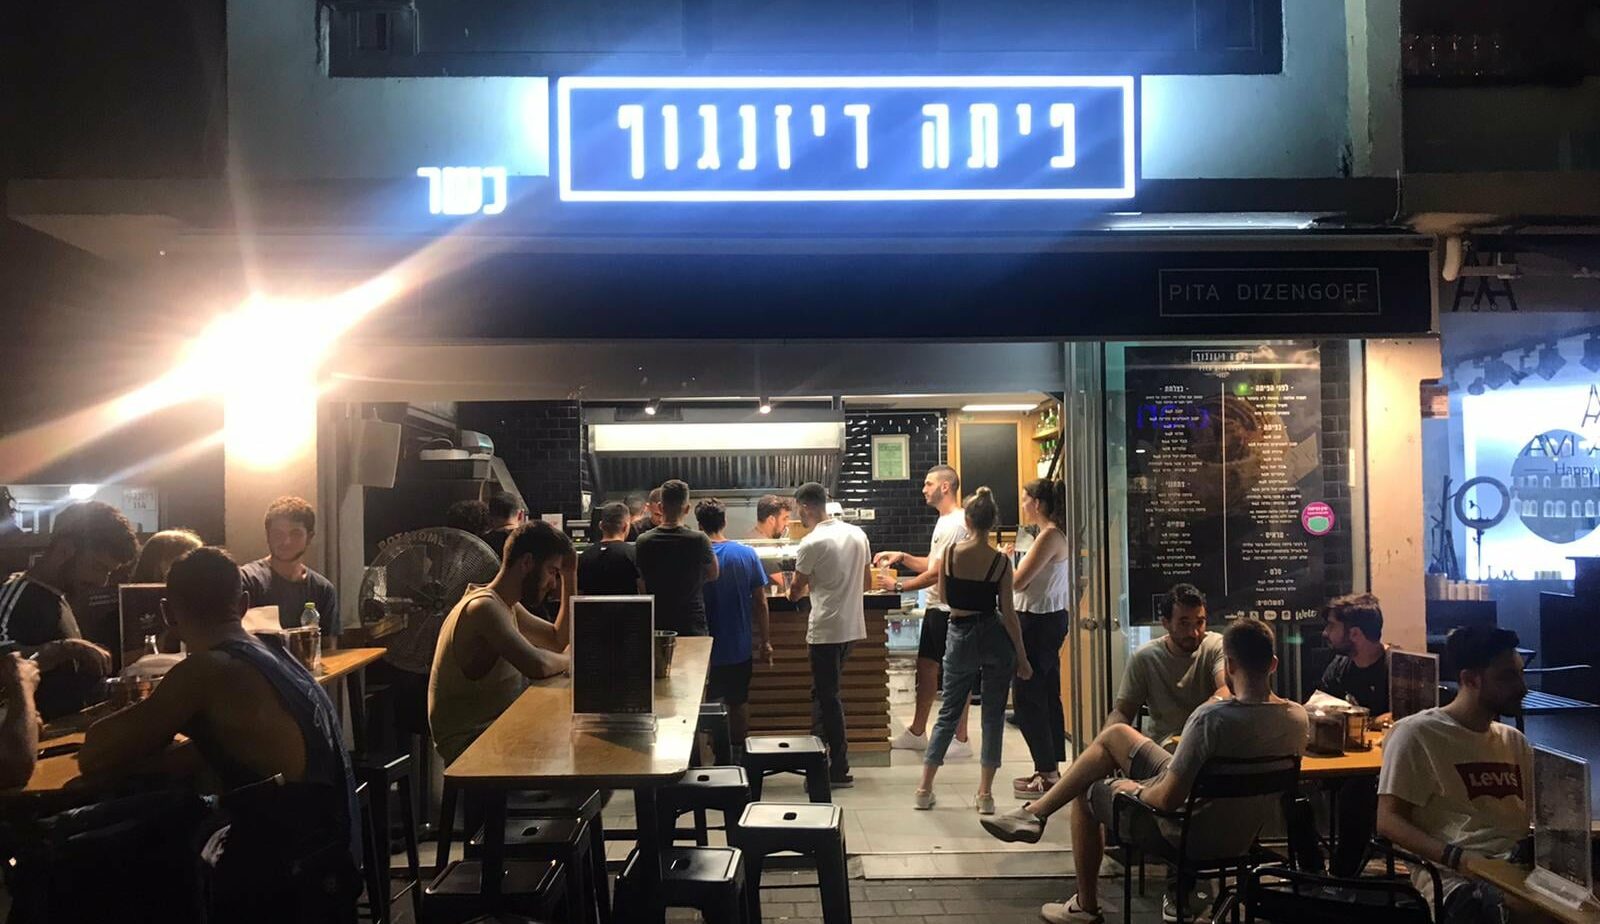 פיתה דיזנגוף 112 תל אביב, עיצוב מסעדה